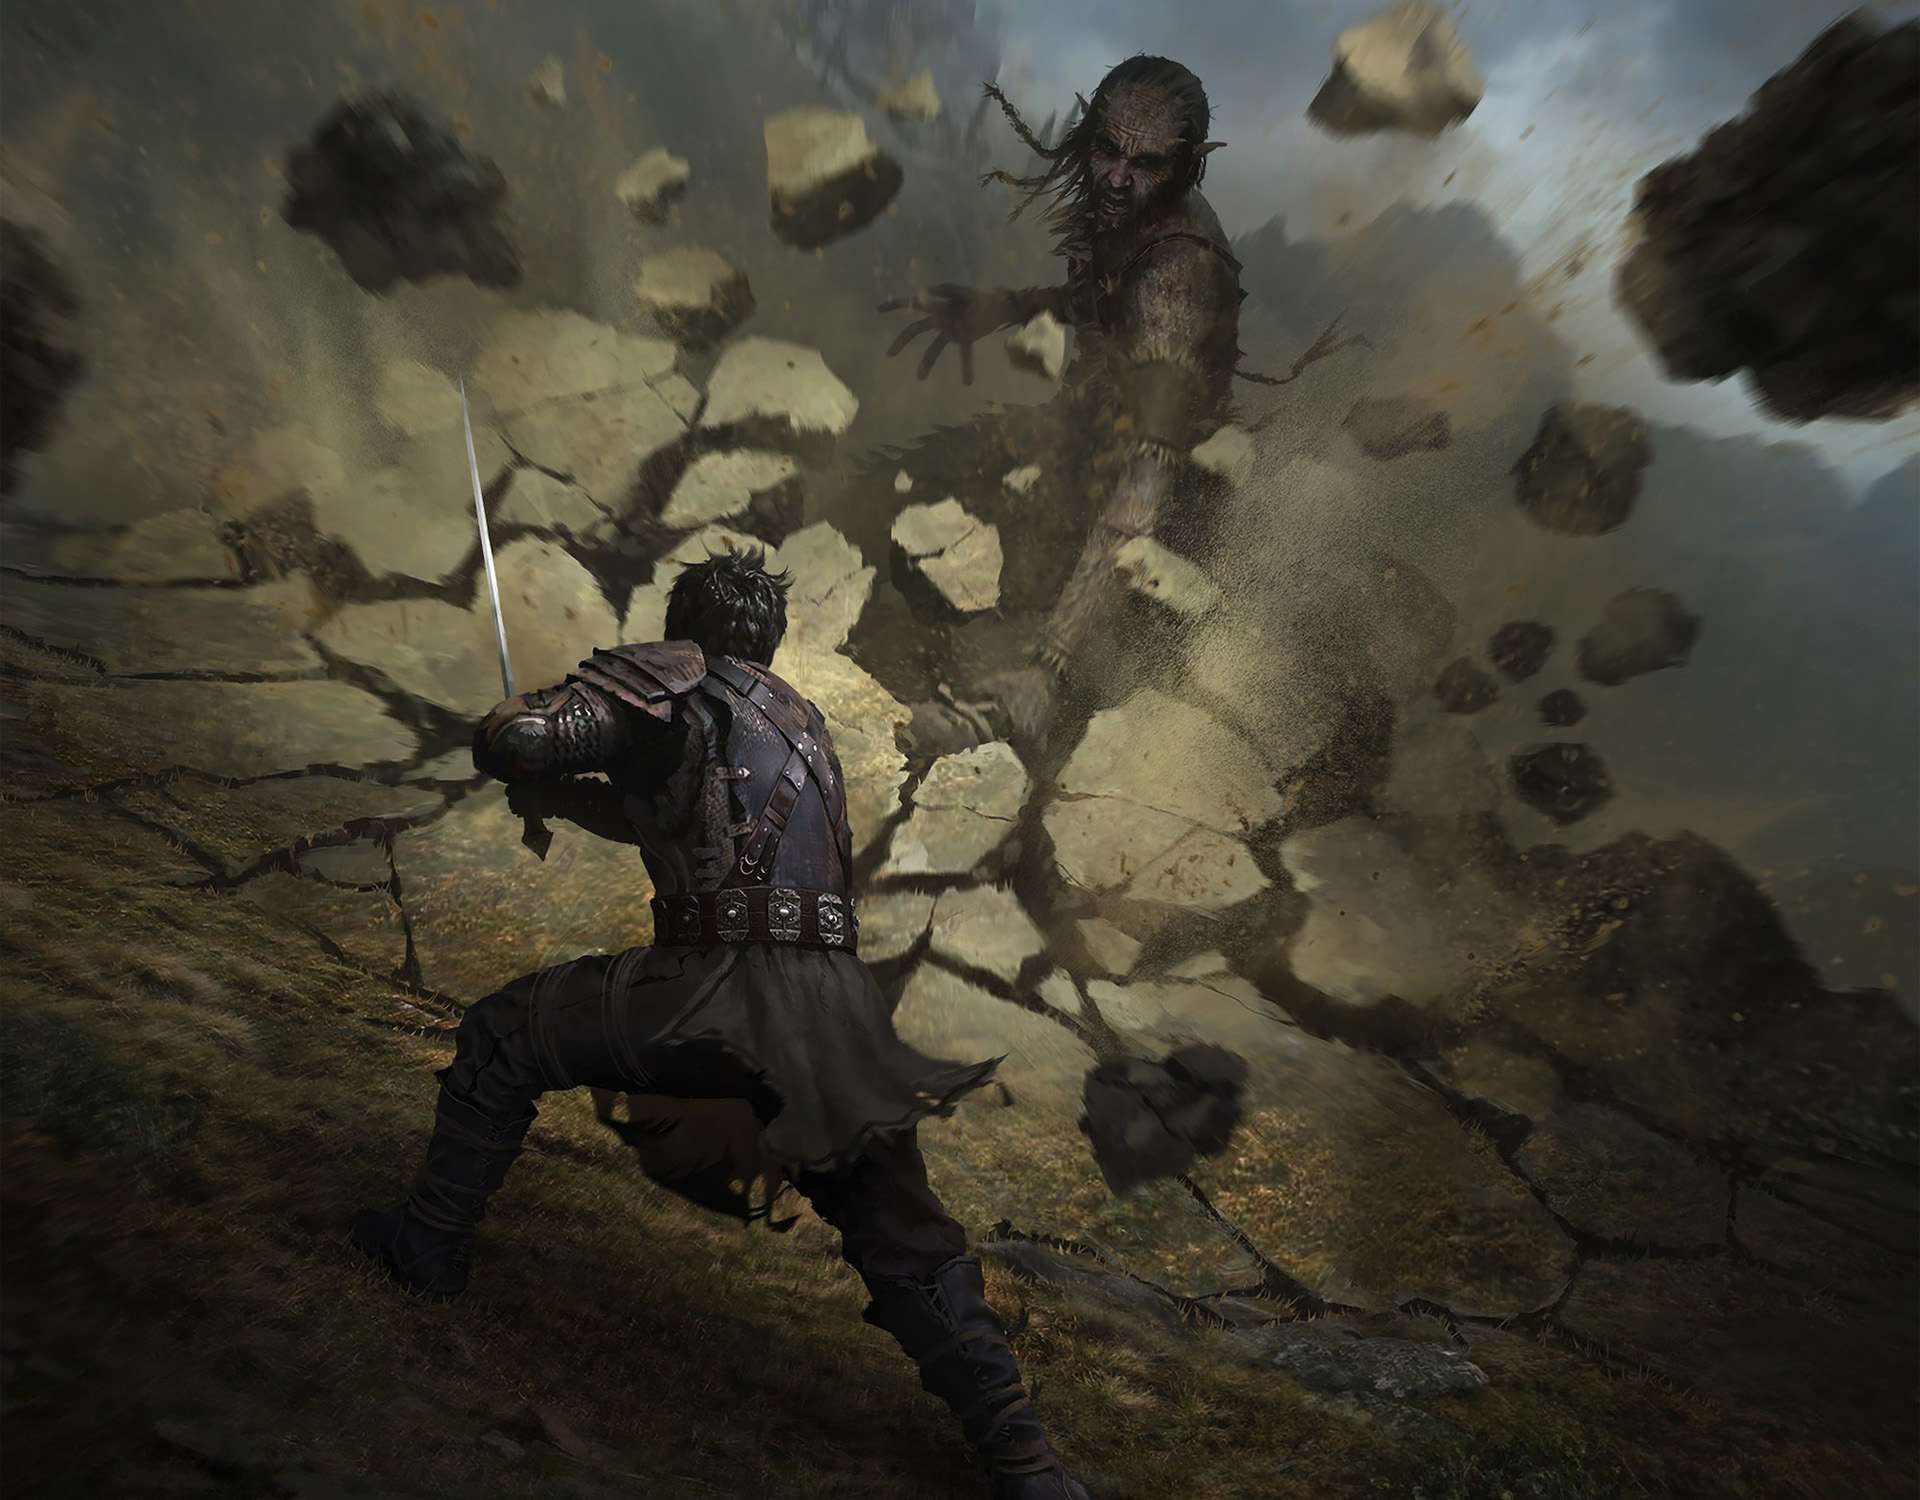 Download mobile wallpaper Video Game, The Elder Scrolls, The Elder Scrolls: Legends for free.